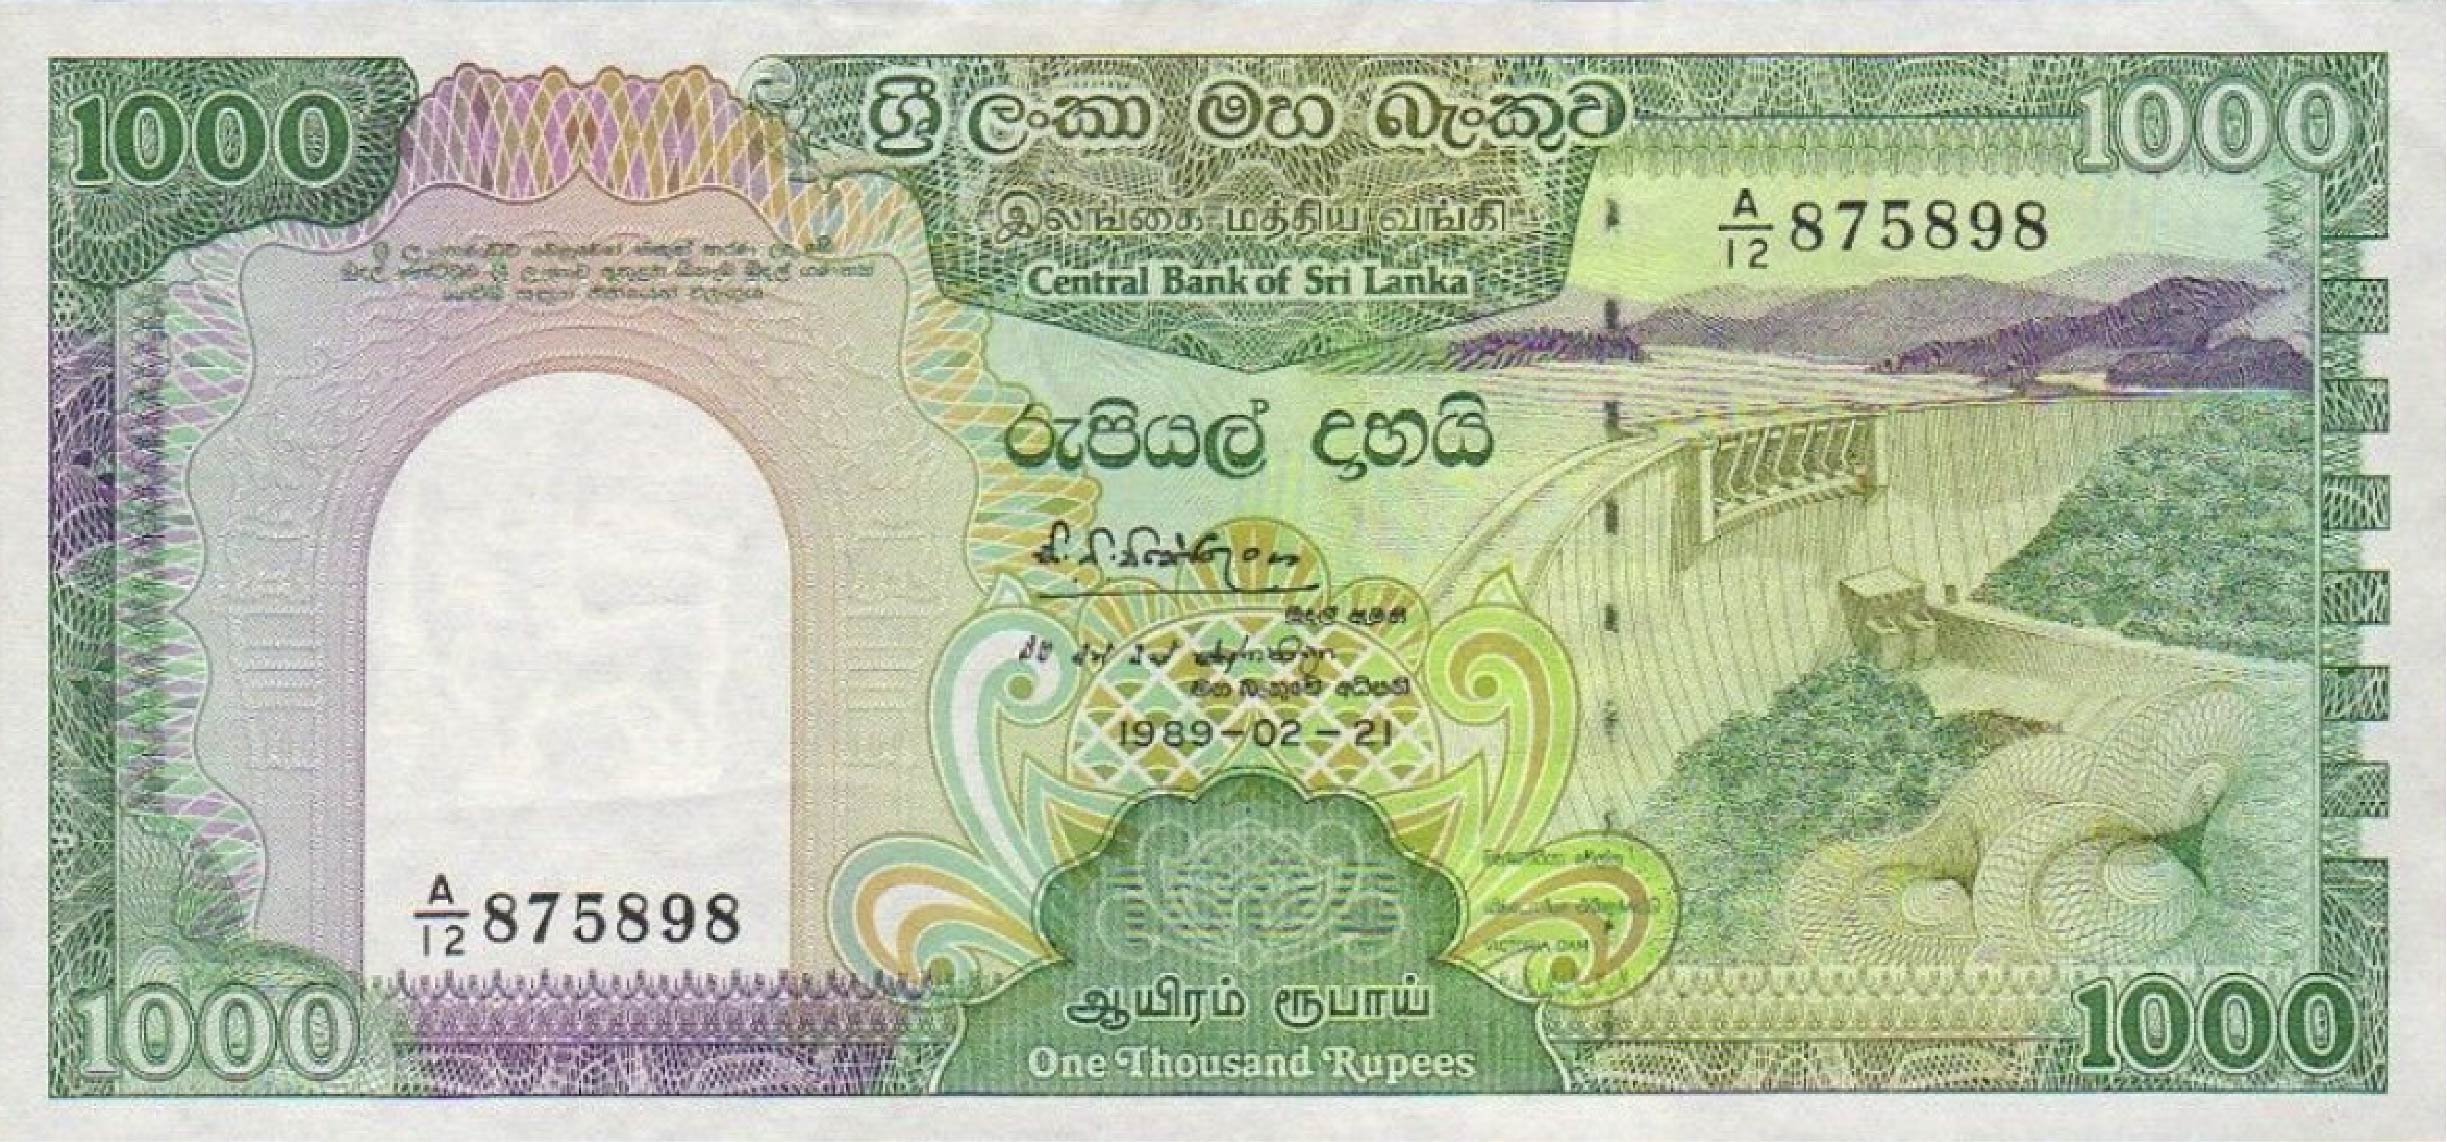 1000 Sri Lankan rupees banknote (Victoria Dam)